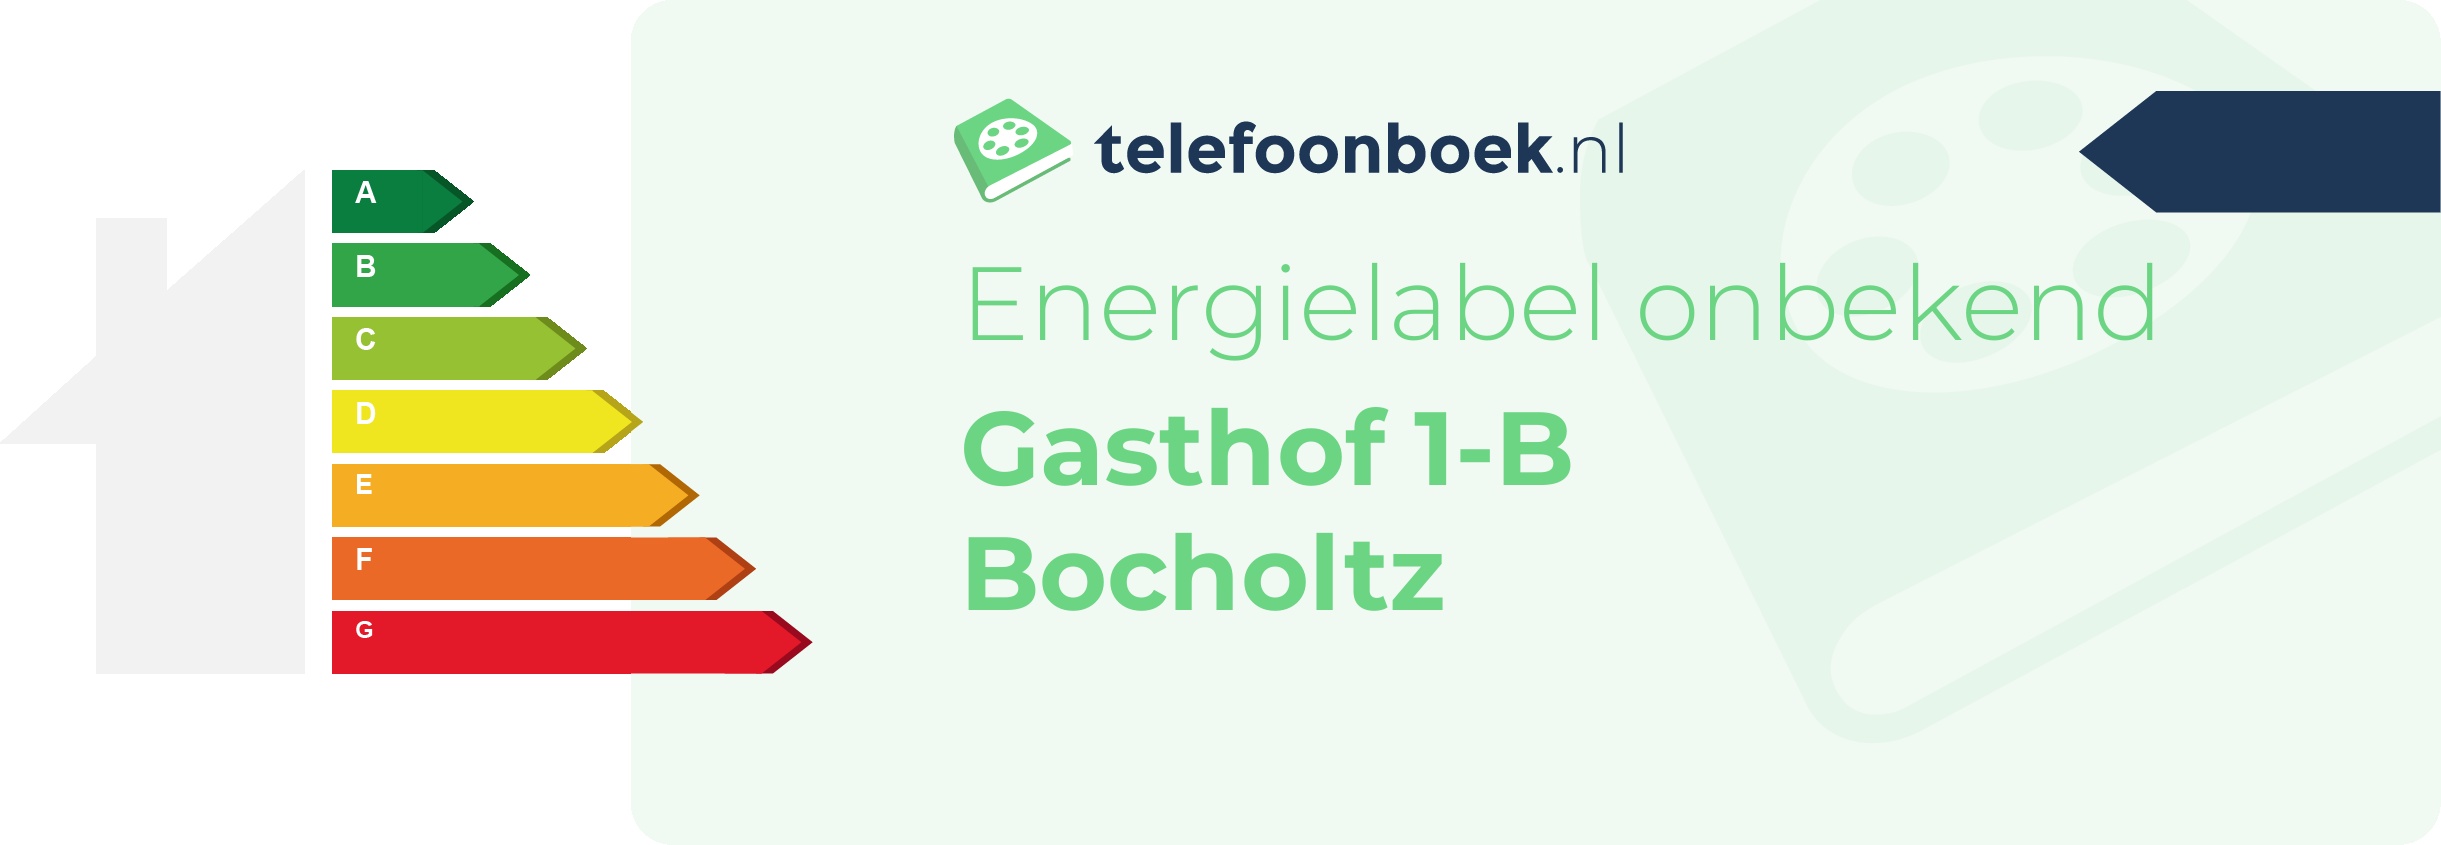 Energielabel Gasthof 1-B Bocholtz